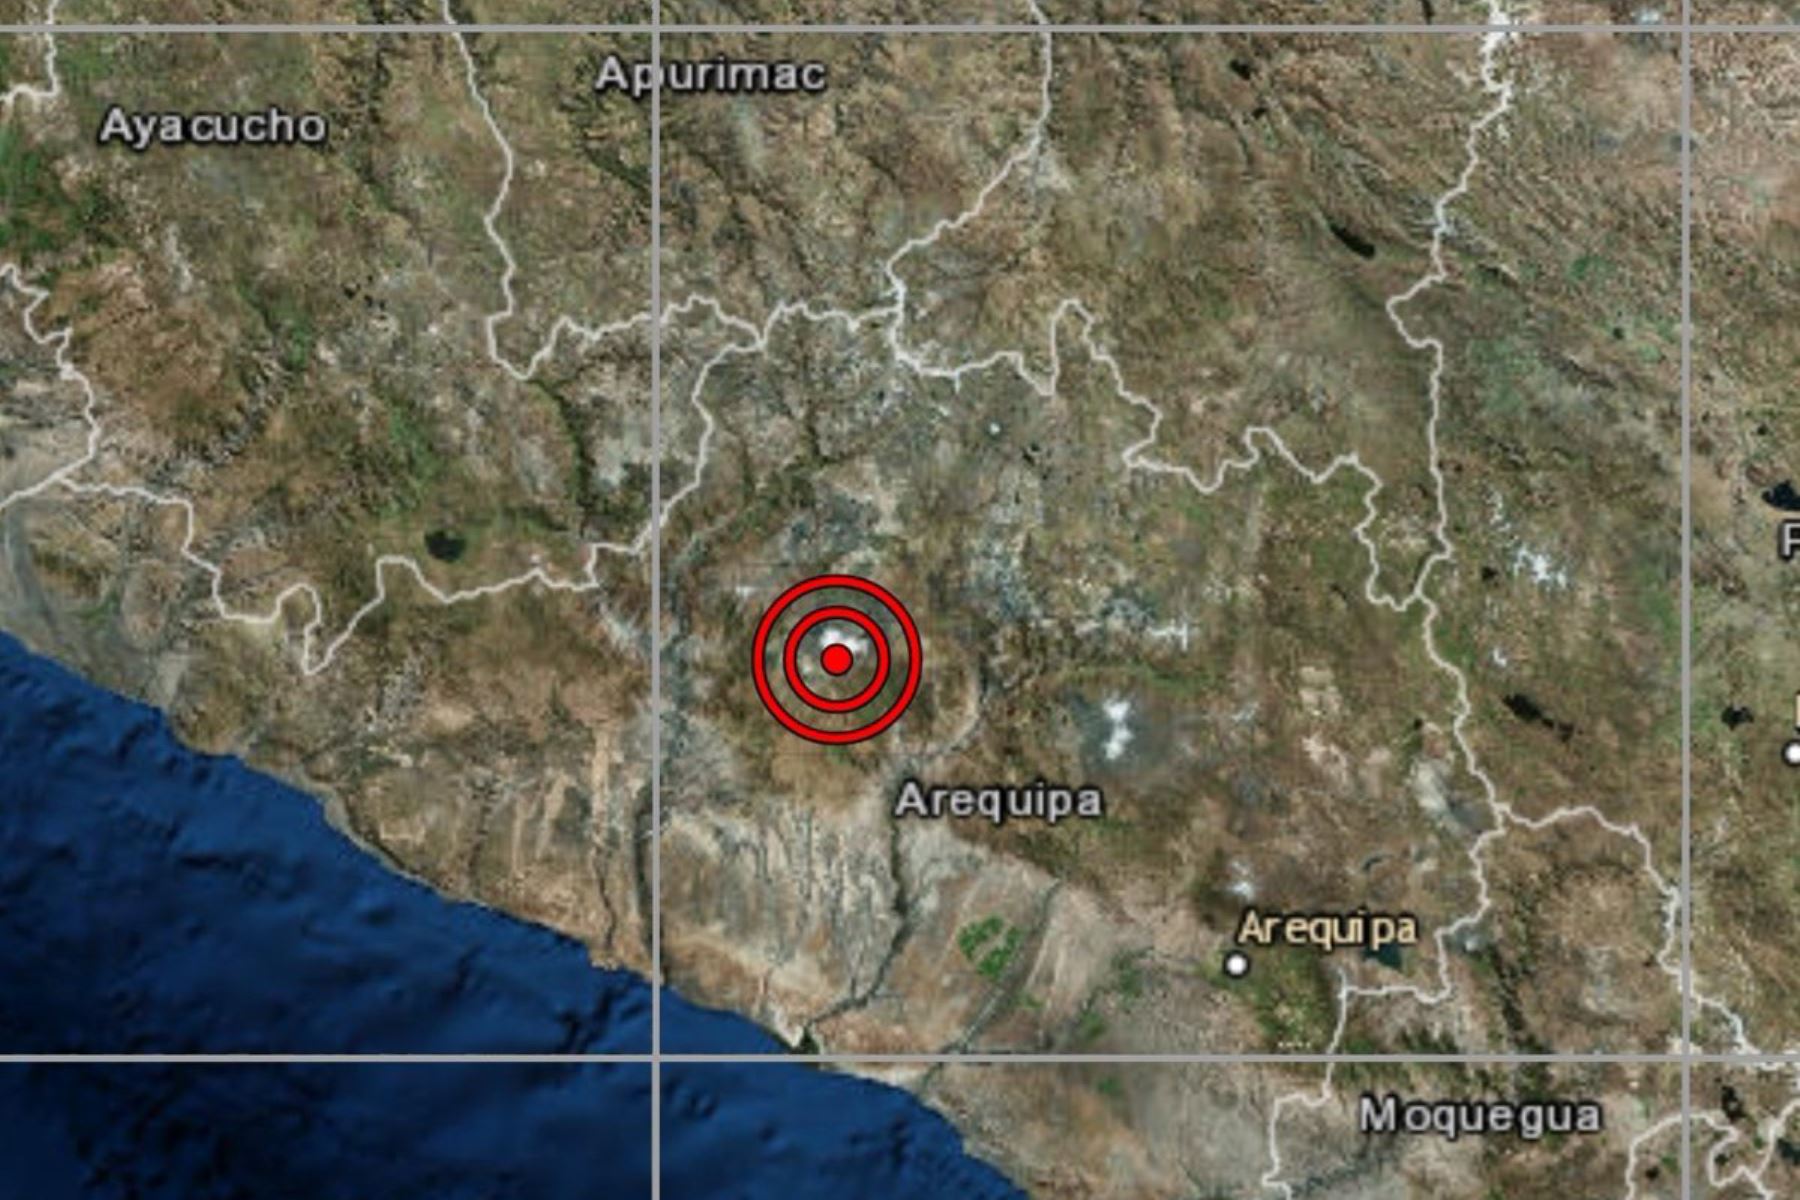 El distrito de Viraco, ubicado en la región Arequipa, fue remecido esta tarde por un sismo de magnitud 5.4.